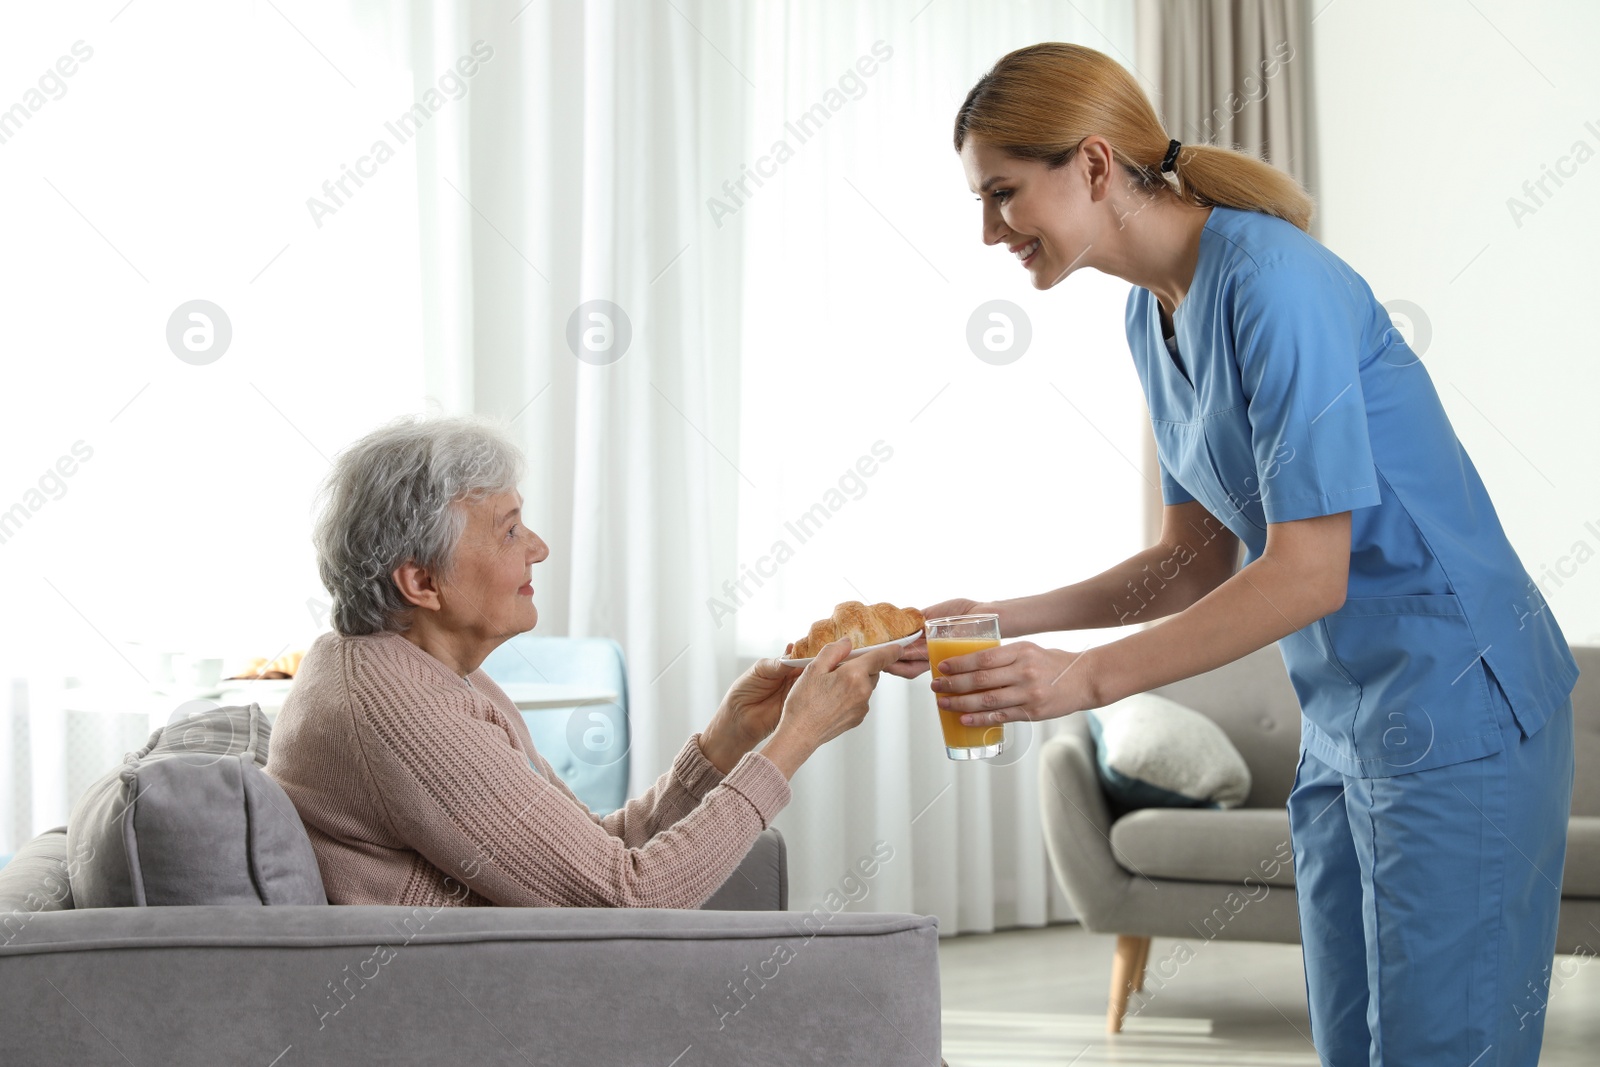 Photo of Nurse serving breakfast to elderly woman indoors. Assisting senior people